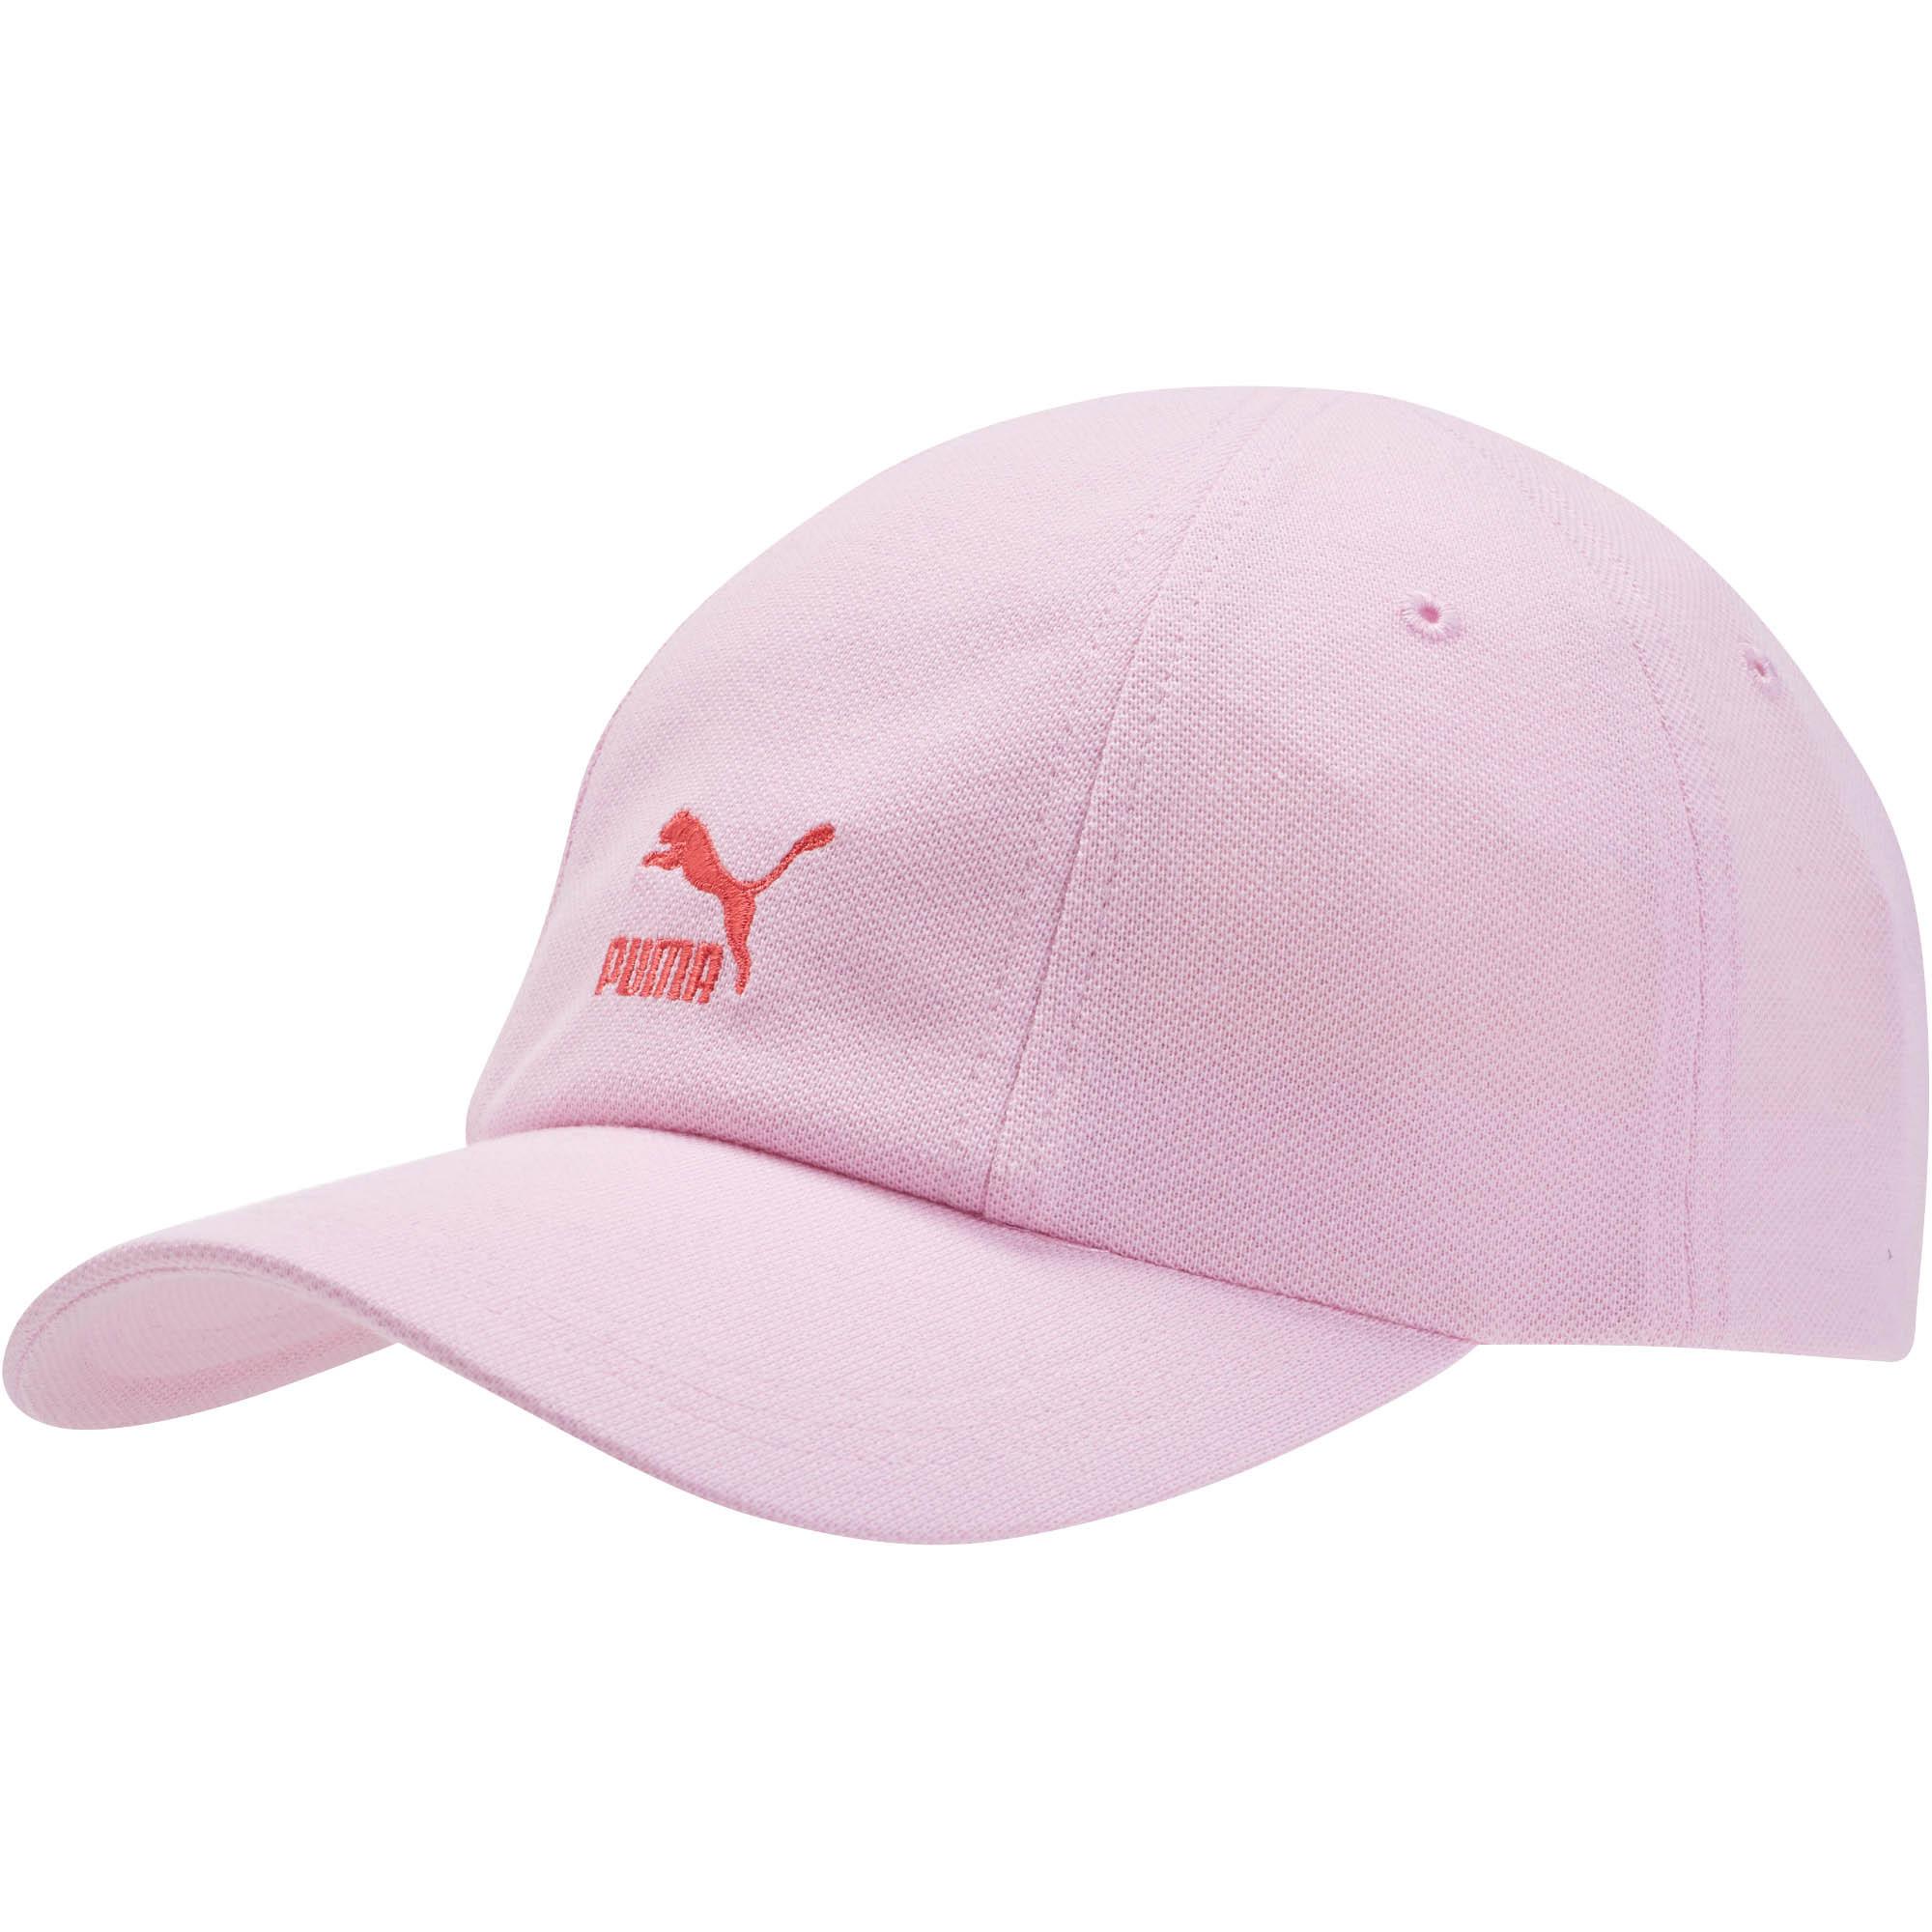 pink puma cap